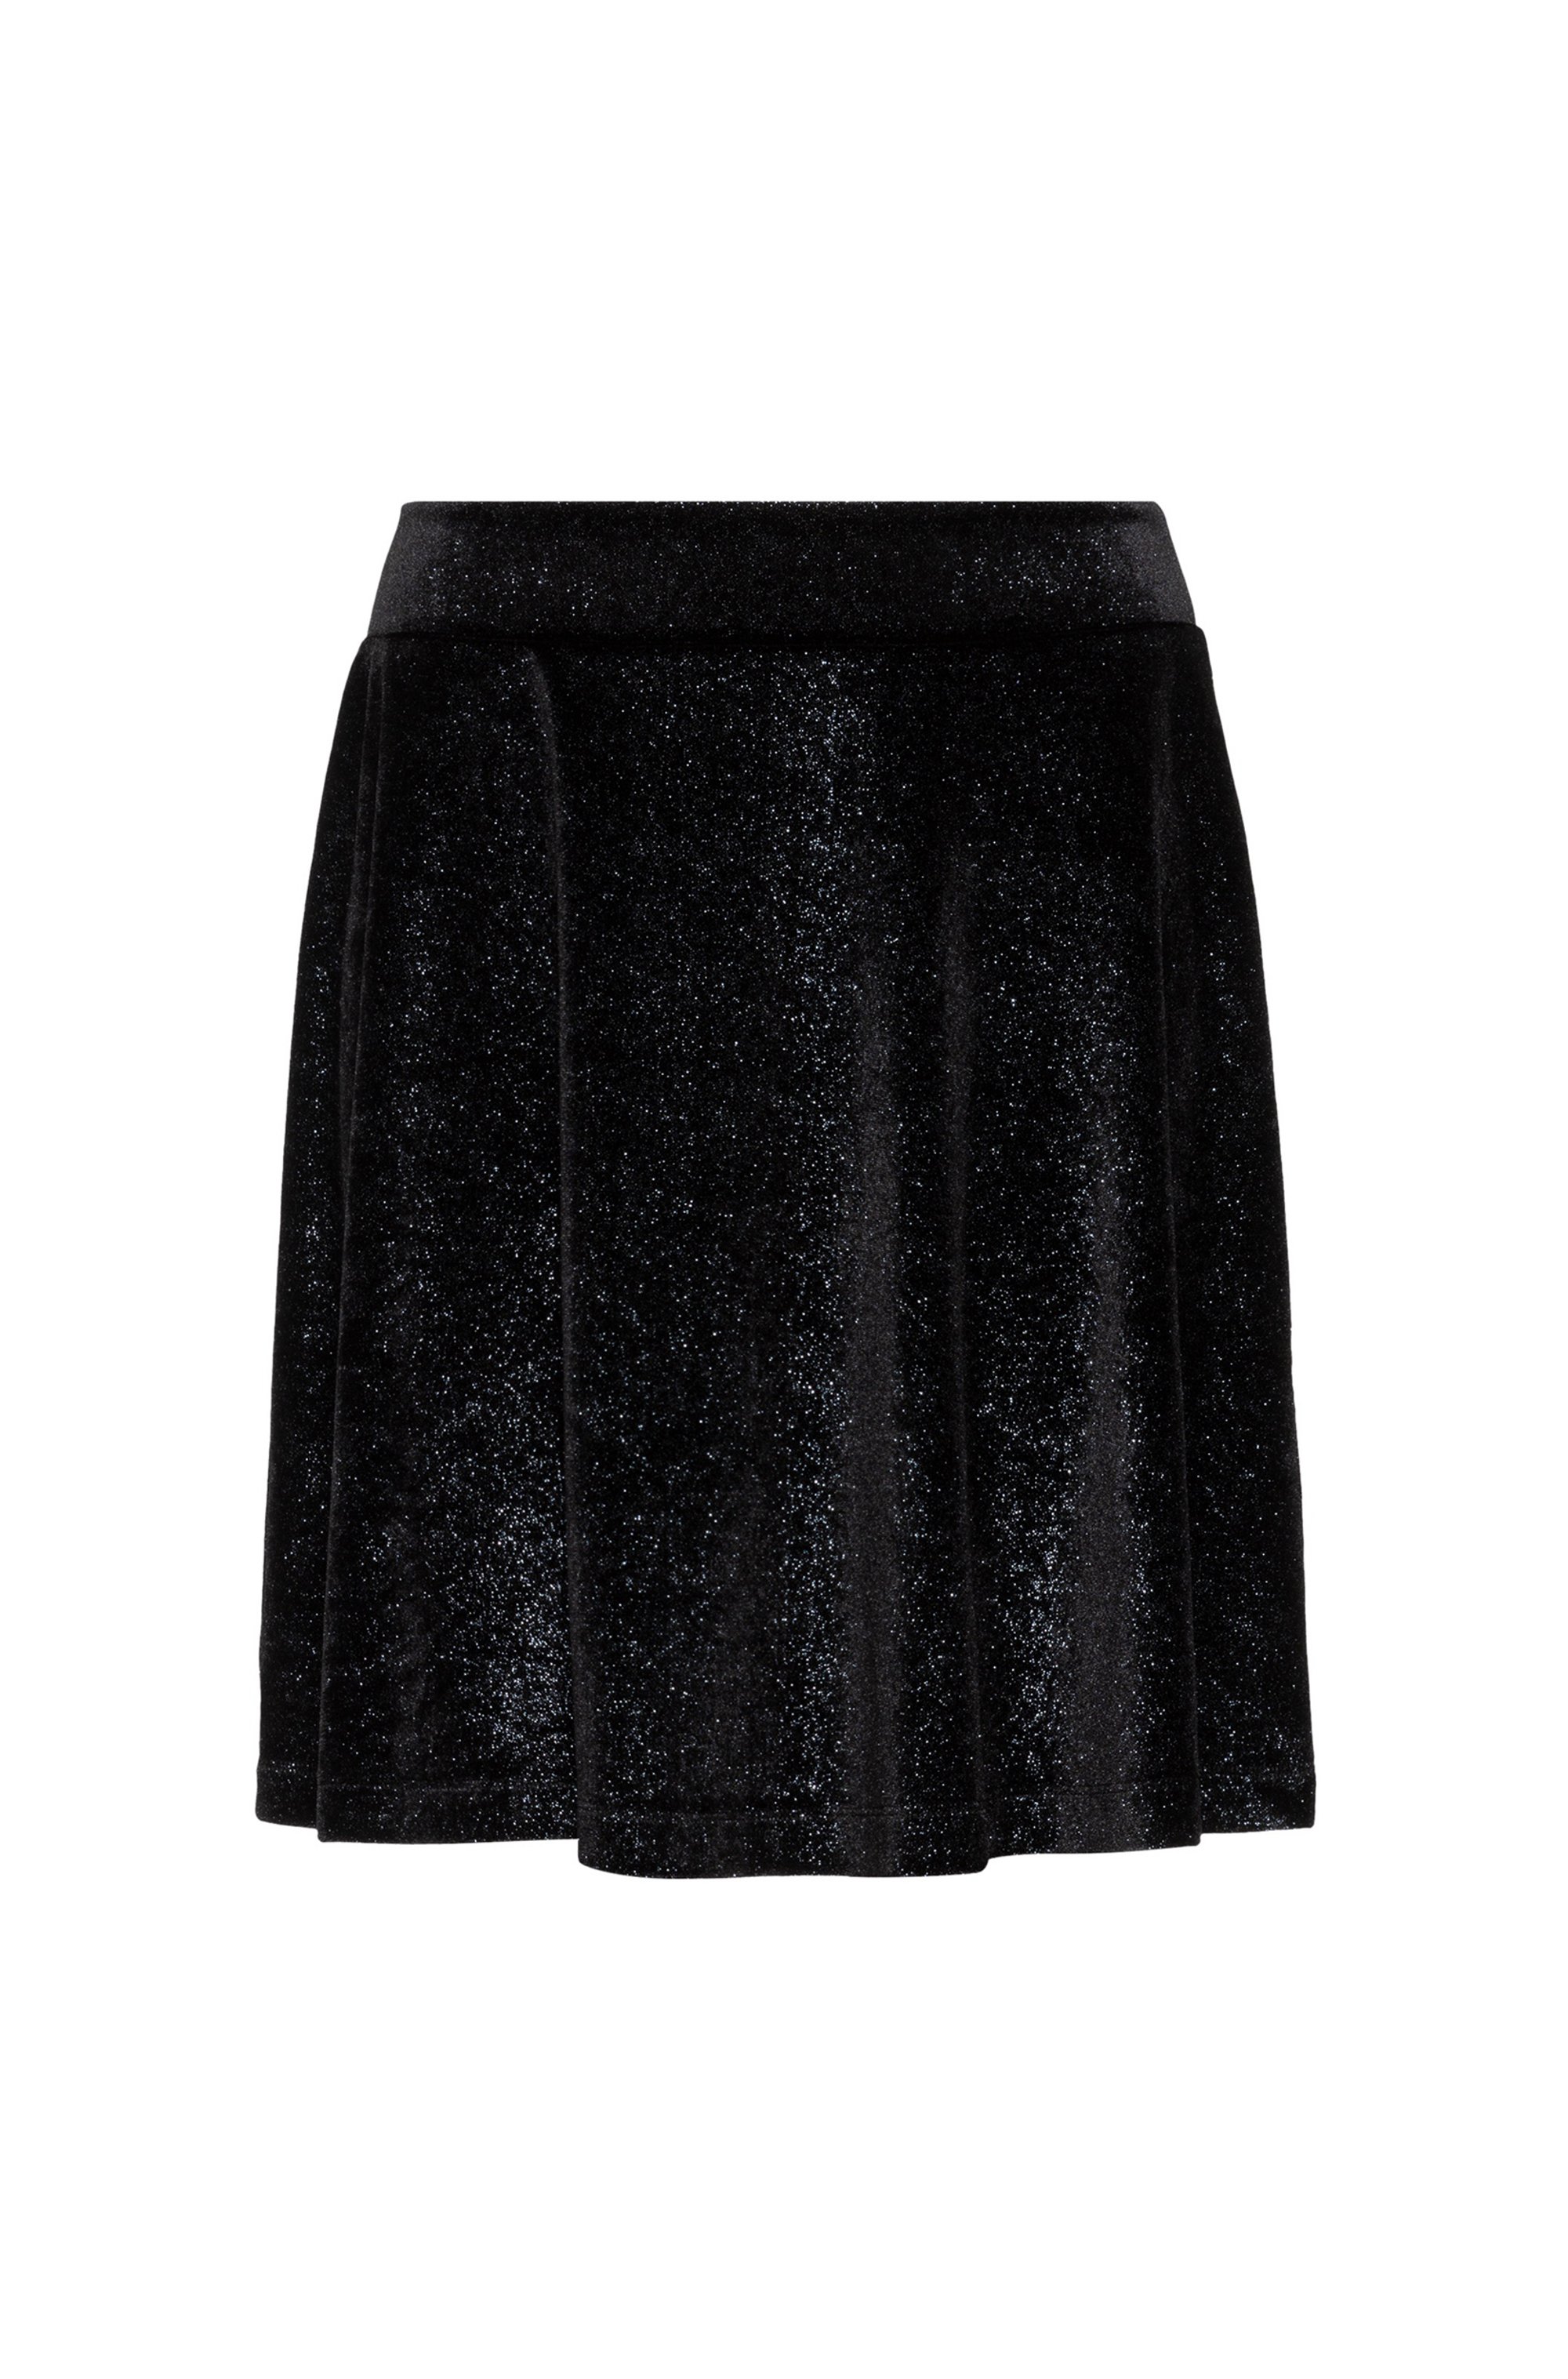 High-waisted A-line skirt in glittery velvet, Black